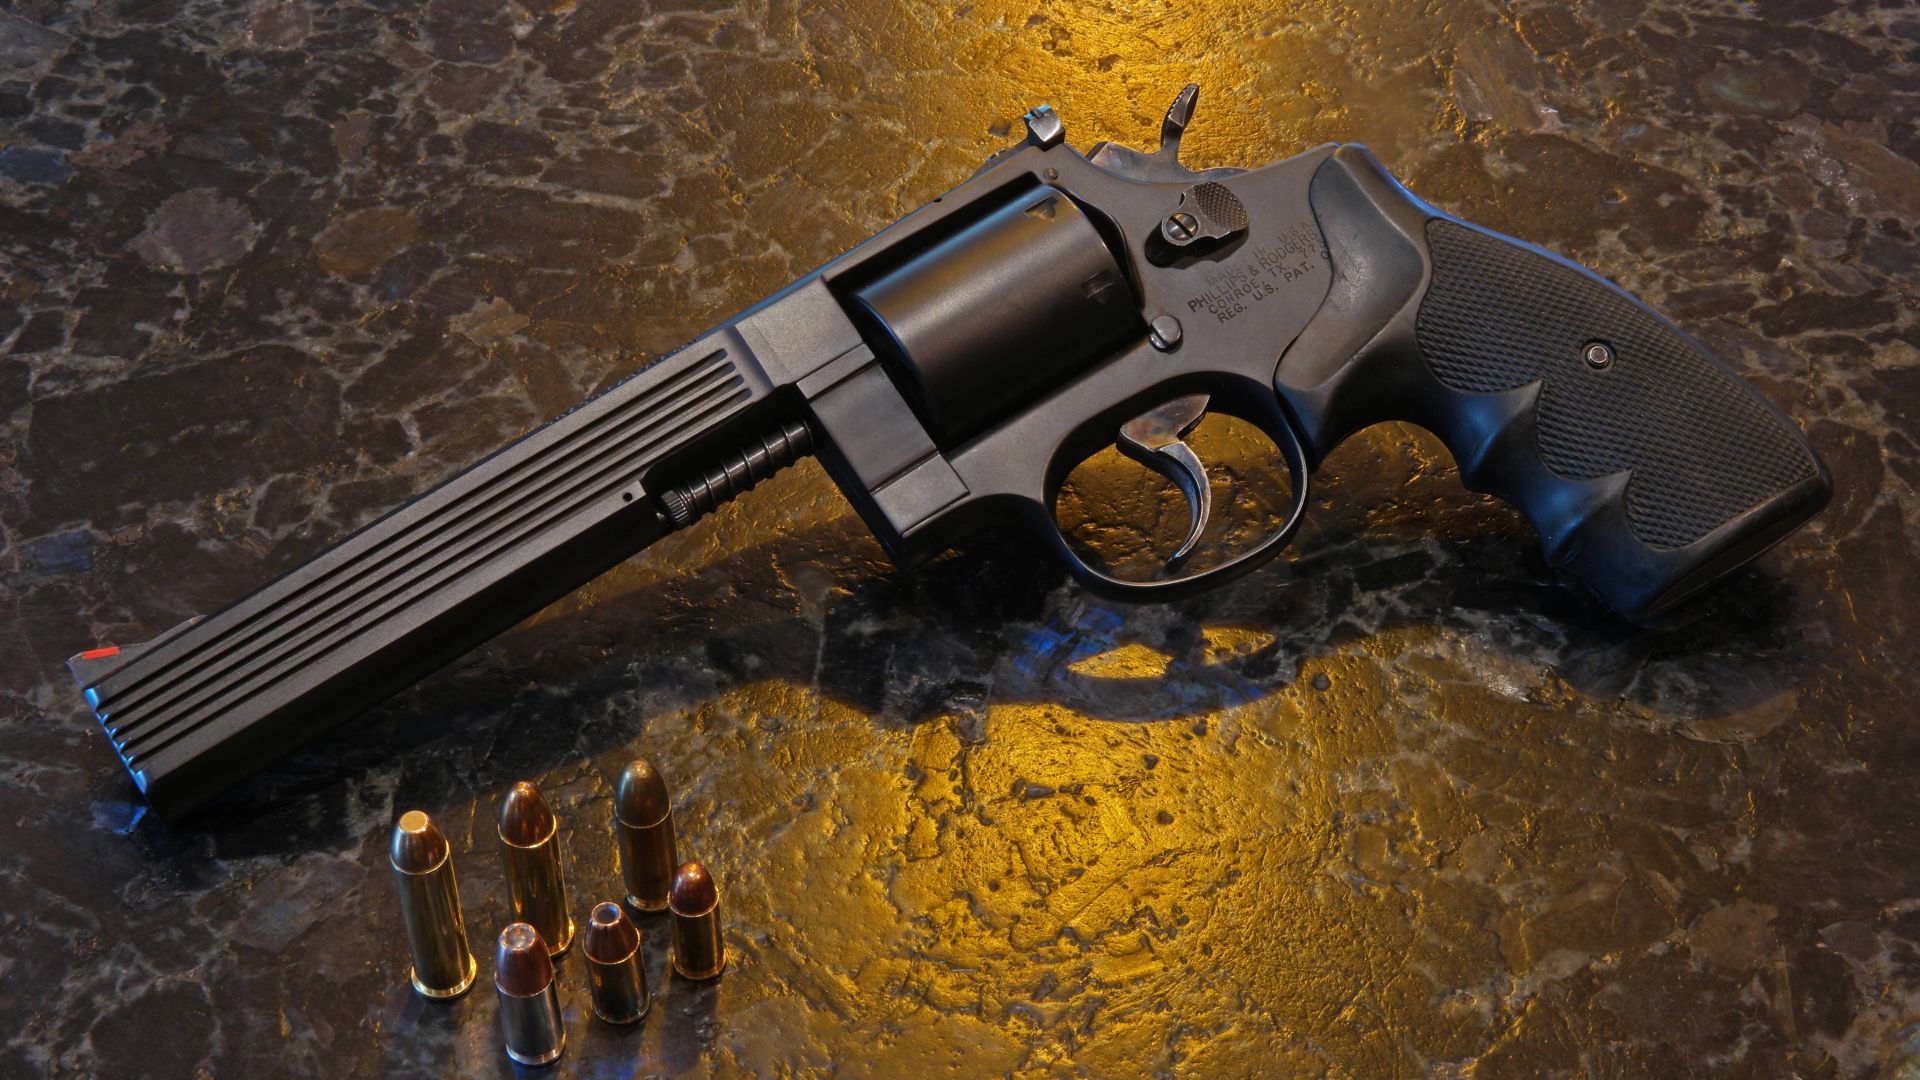 Phillips & Rodgers Medusa Model 47, револьвер, уникальное оружие, Phillips & Rodgers Medusa Model 47, revolver, unique weapon (horizontal)